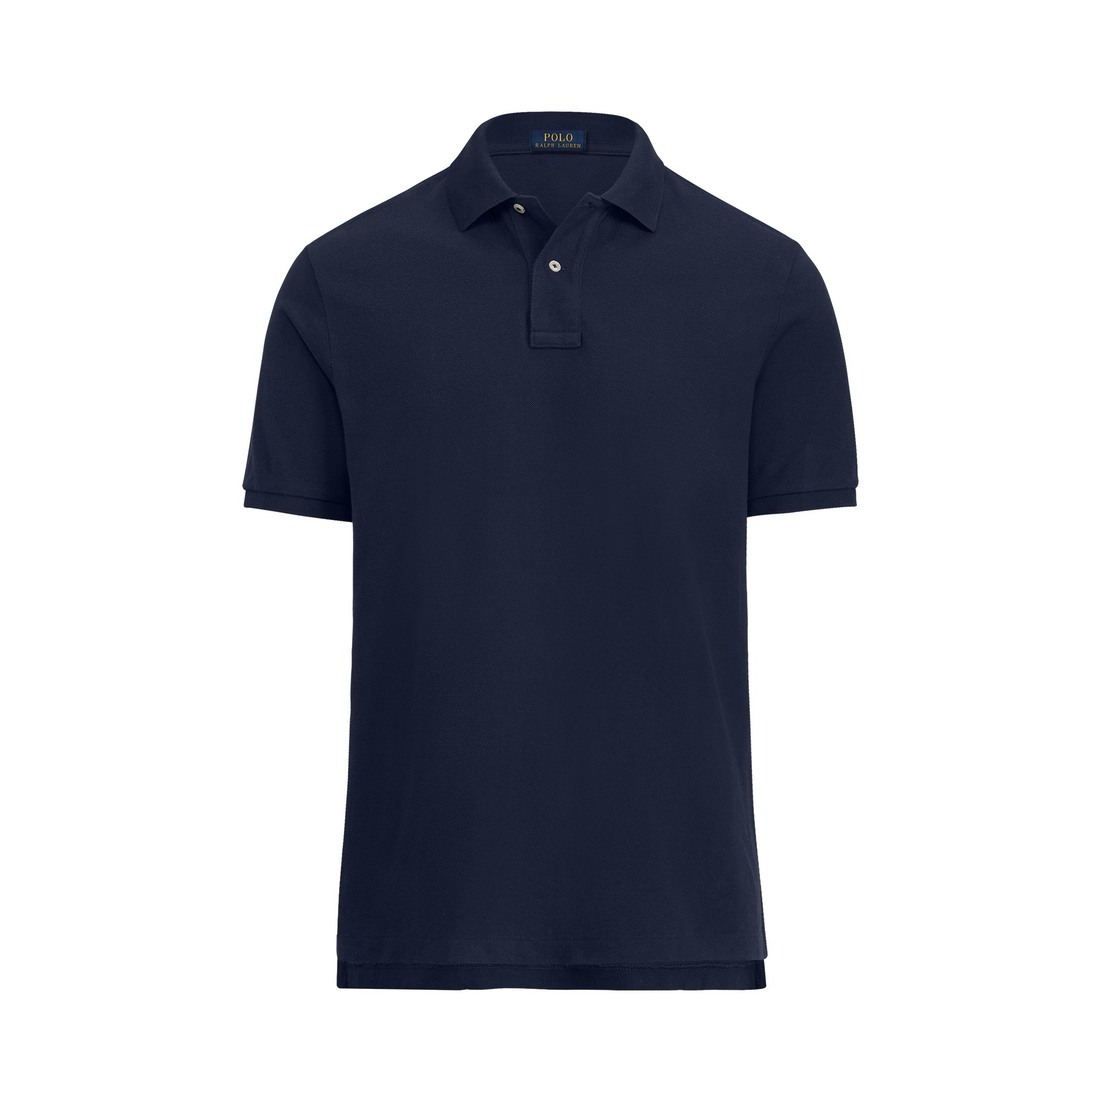 Men's Polo Ralph Lauren Button Up Shirts